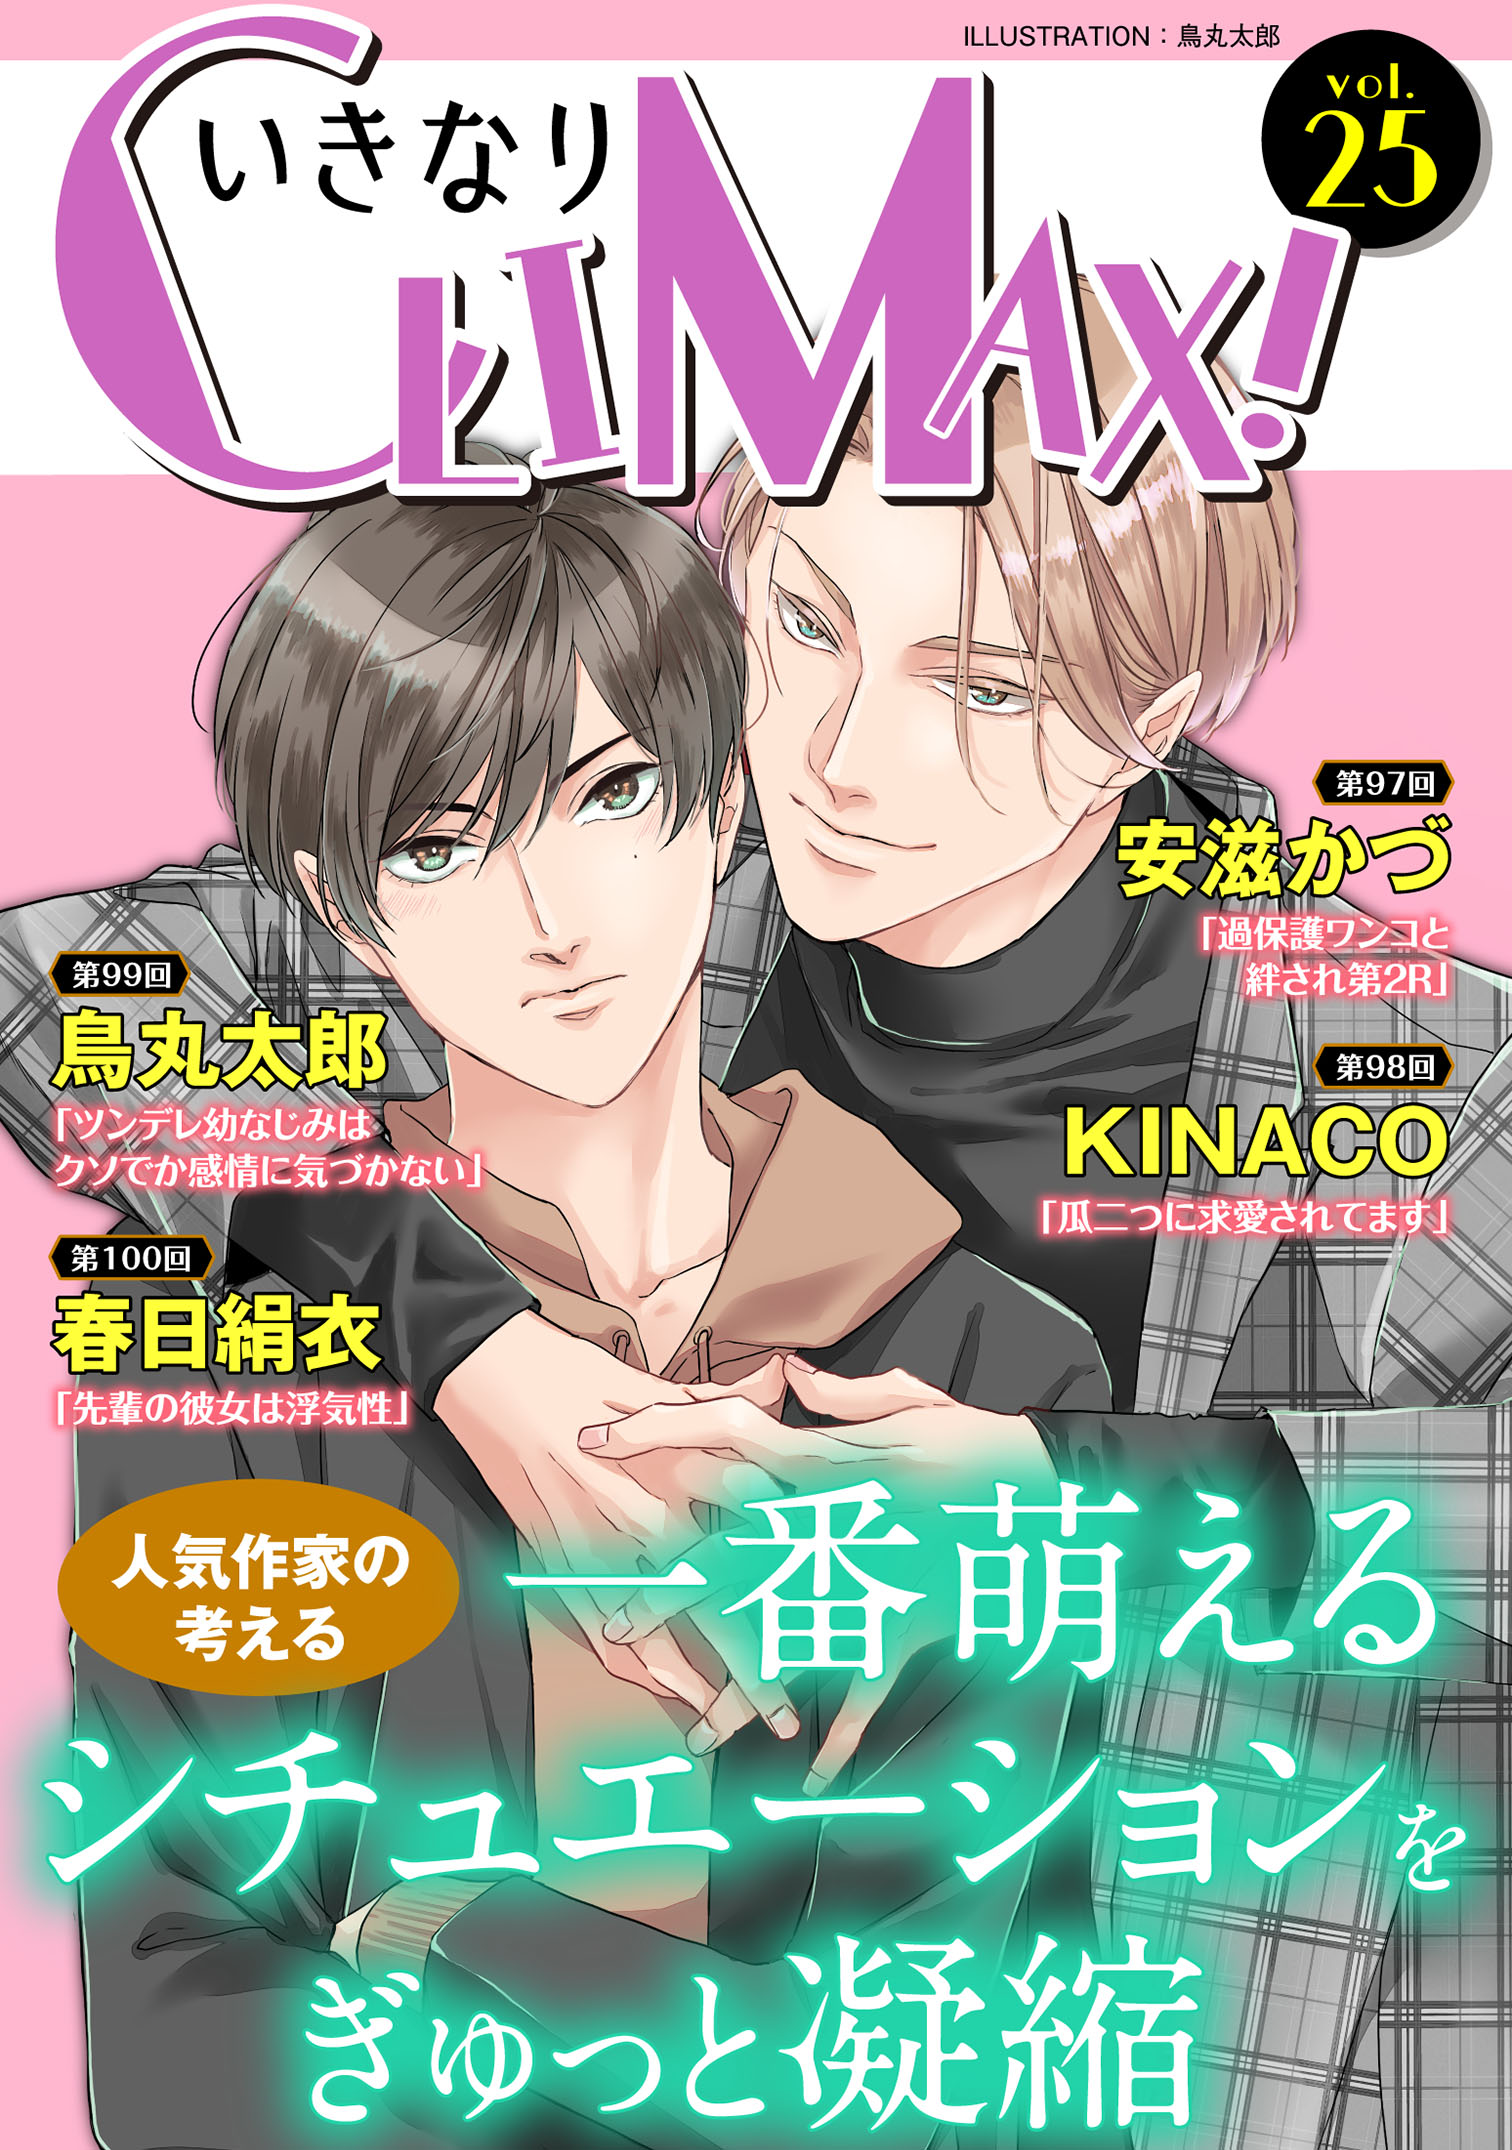 いきなりCLIMAX!Vol.25 - 安滋かづ/KINACO - 漫画・無料試し読みなら